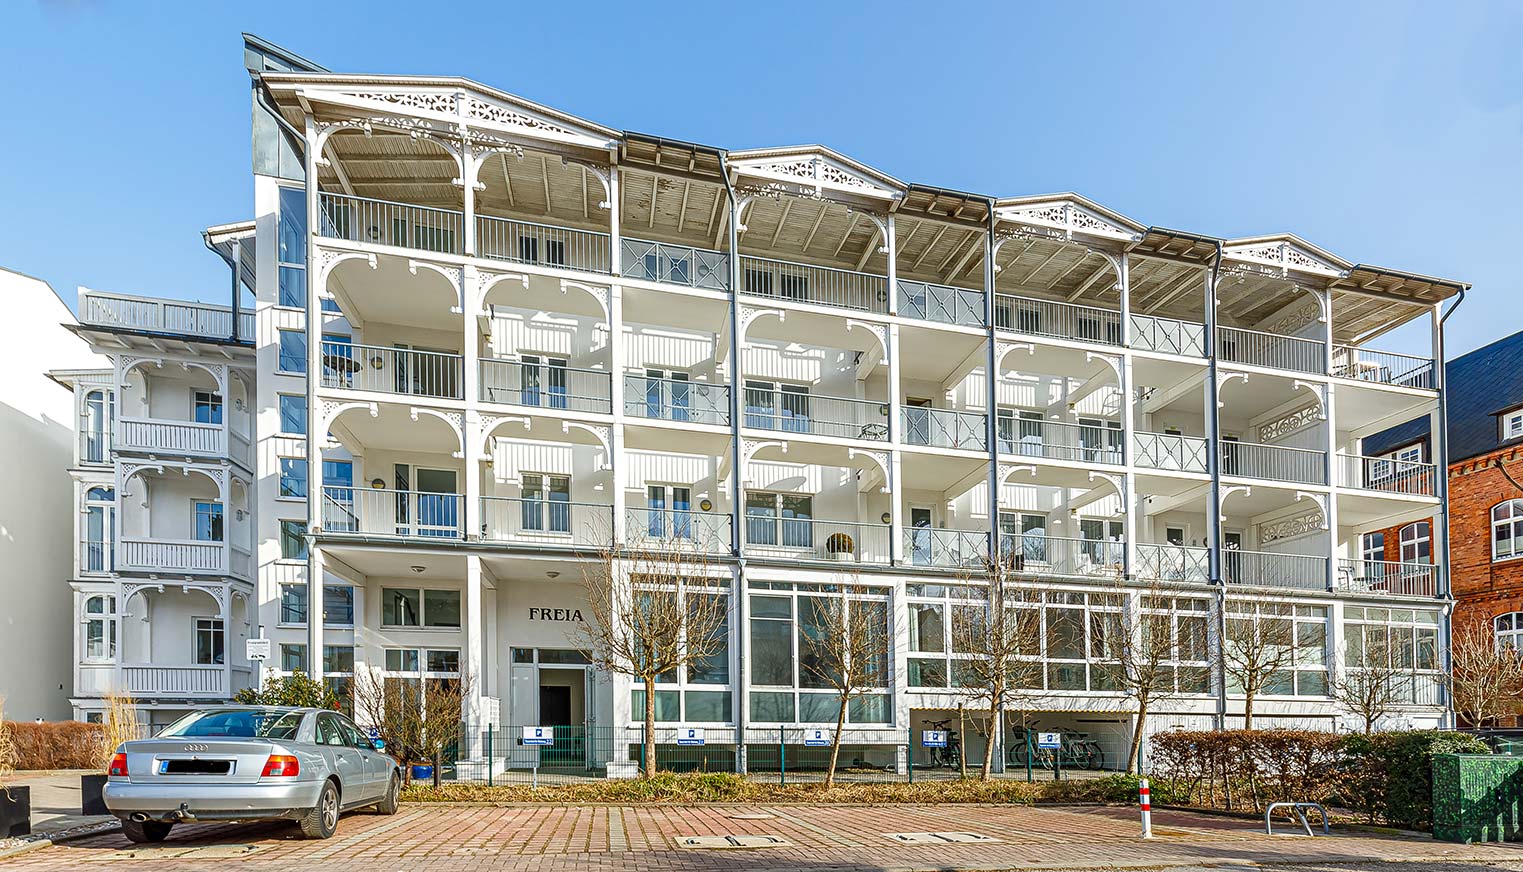 Villa Freia - Appartement Amber direkte Strandlage an der Strandpromenade in Binz